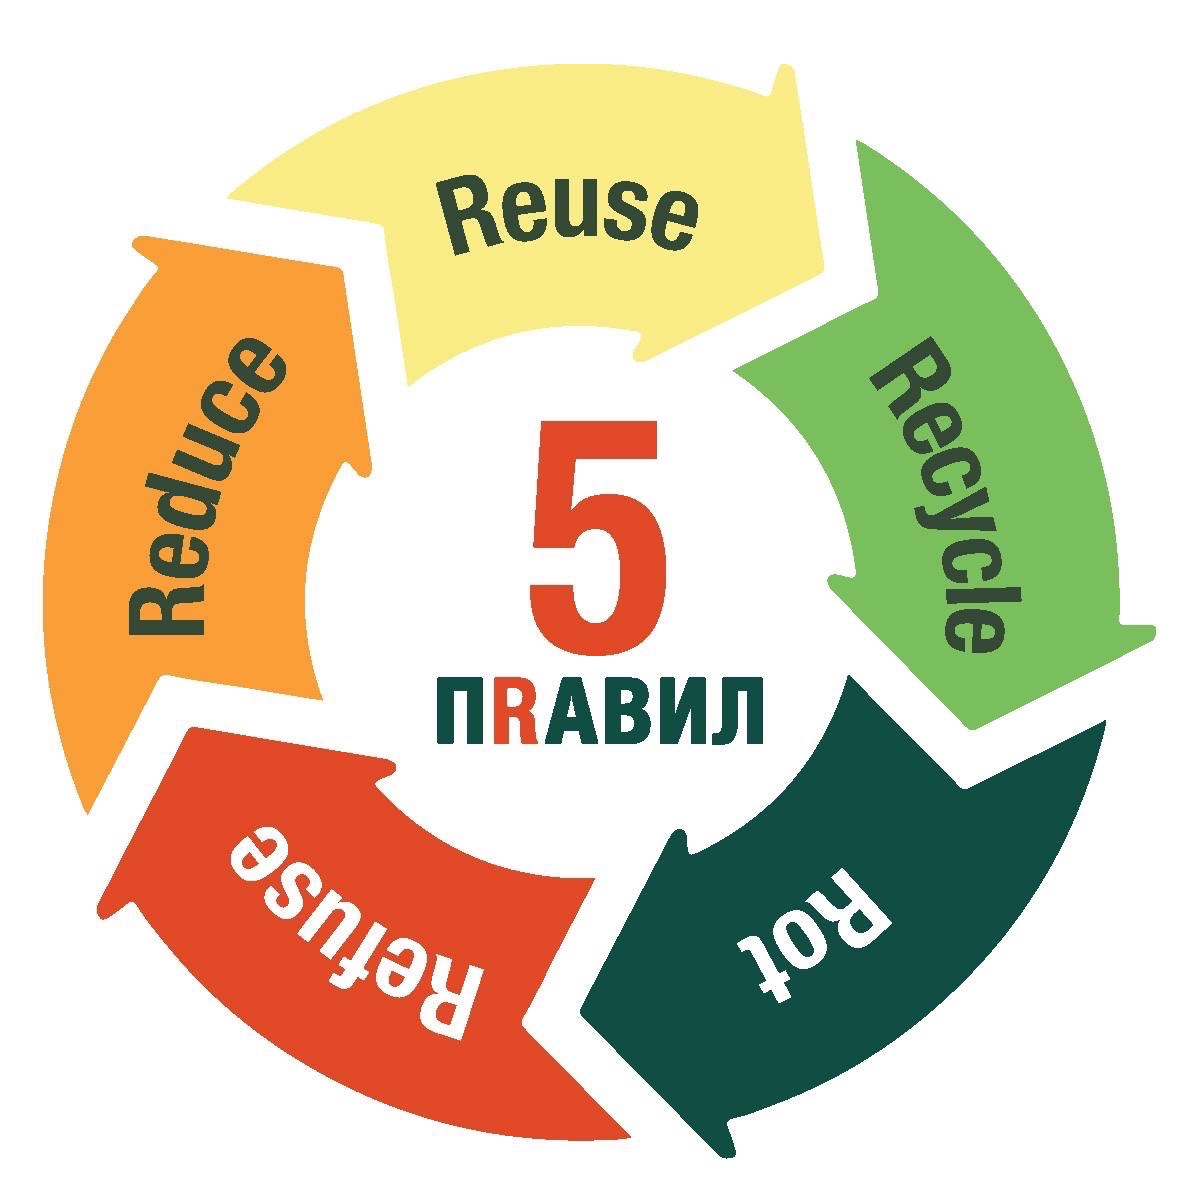 Экологичные мероприятия. Главная афиша России в сфере Устойчивого развития.